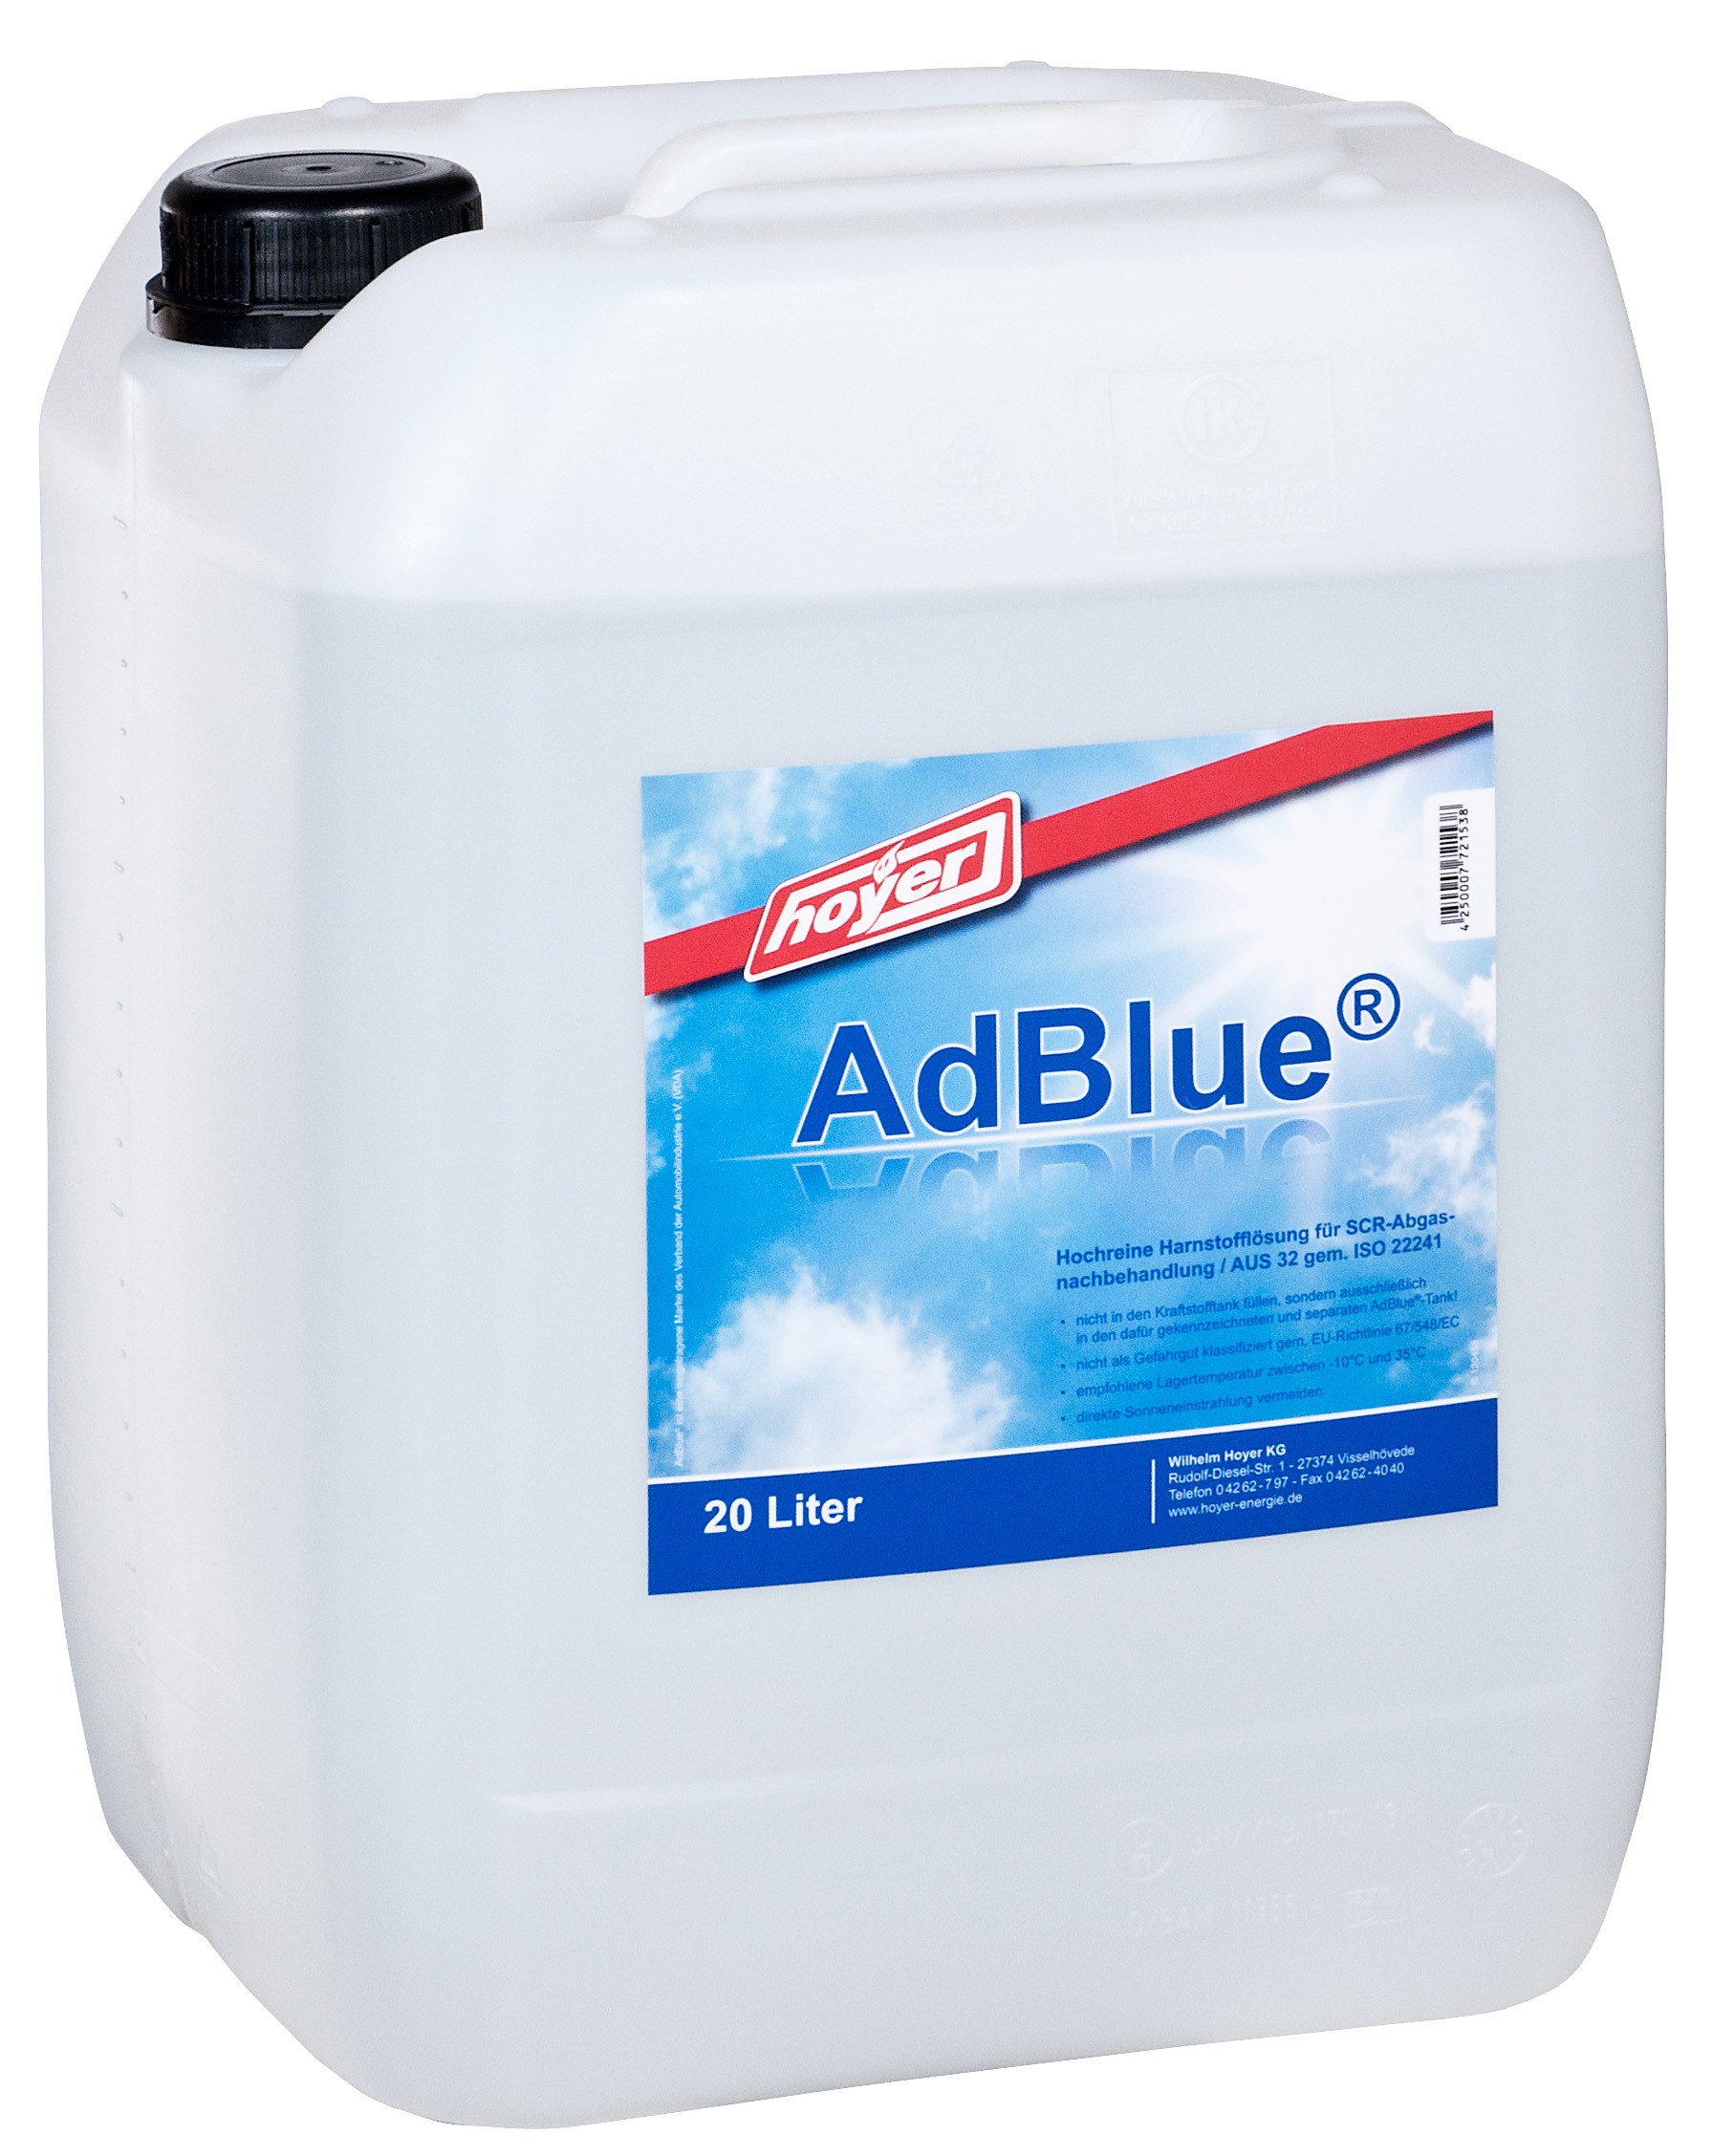 Adblue 20 Liter Kanister preisgünstig erhältlich